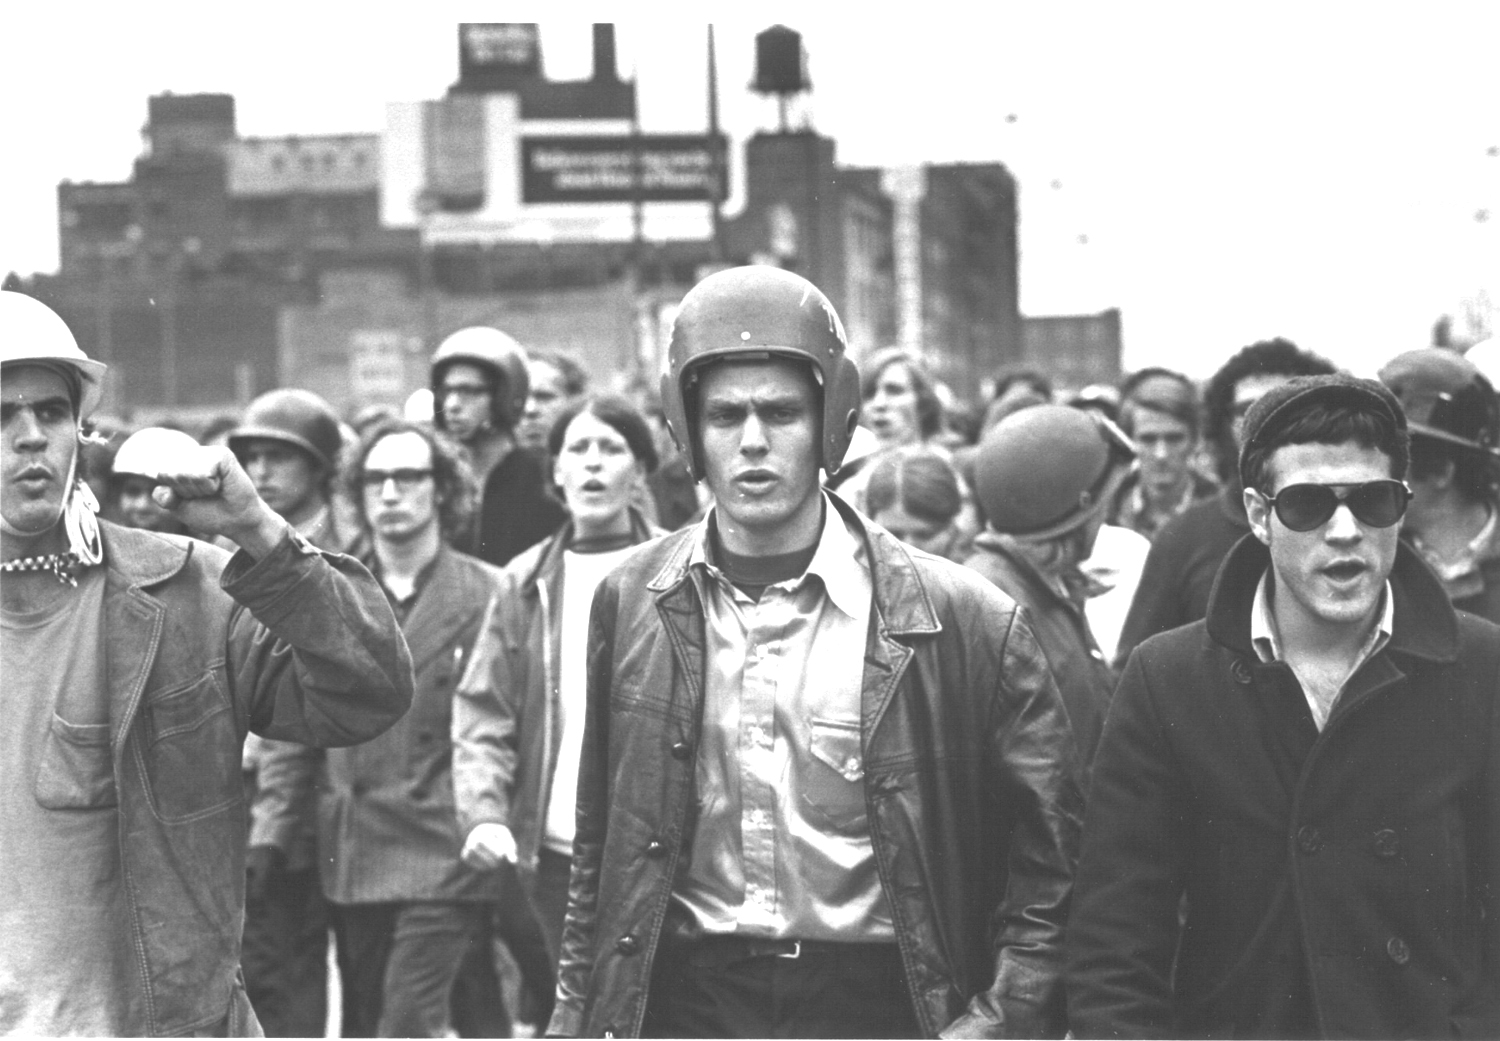 Amorru egunak: Weather Underground Organization taldeak antolatuta, manifestazio bortitzak izan ziren Chicagon (AEB) 1969an (argazkia: David Fenton).